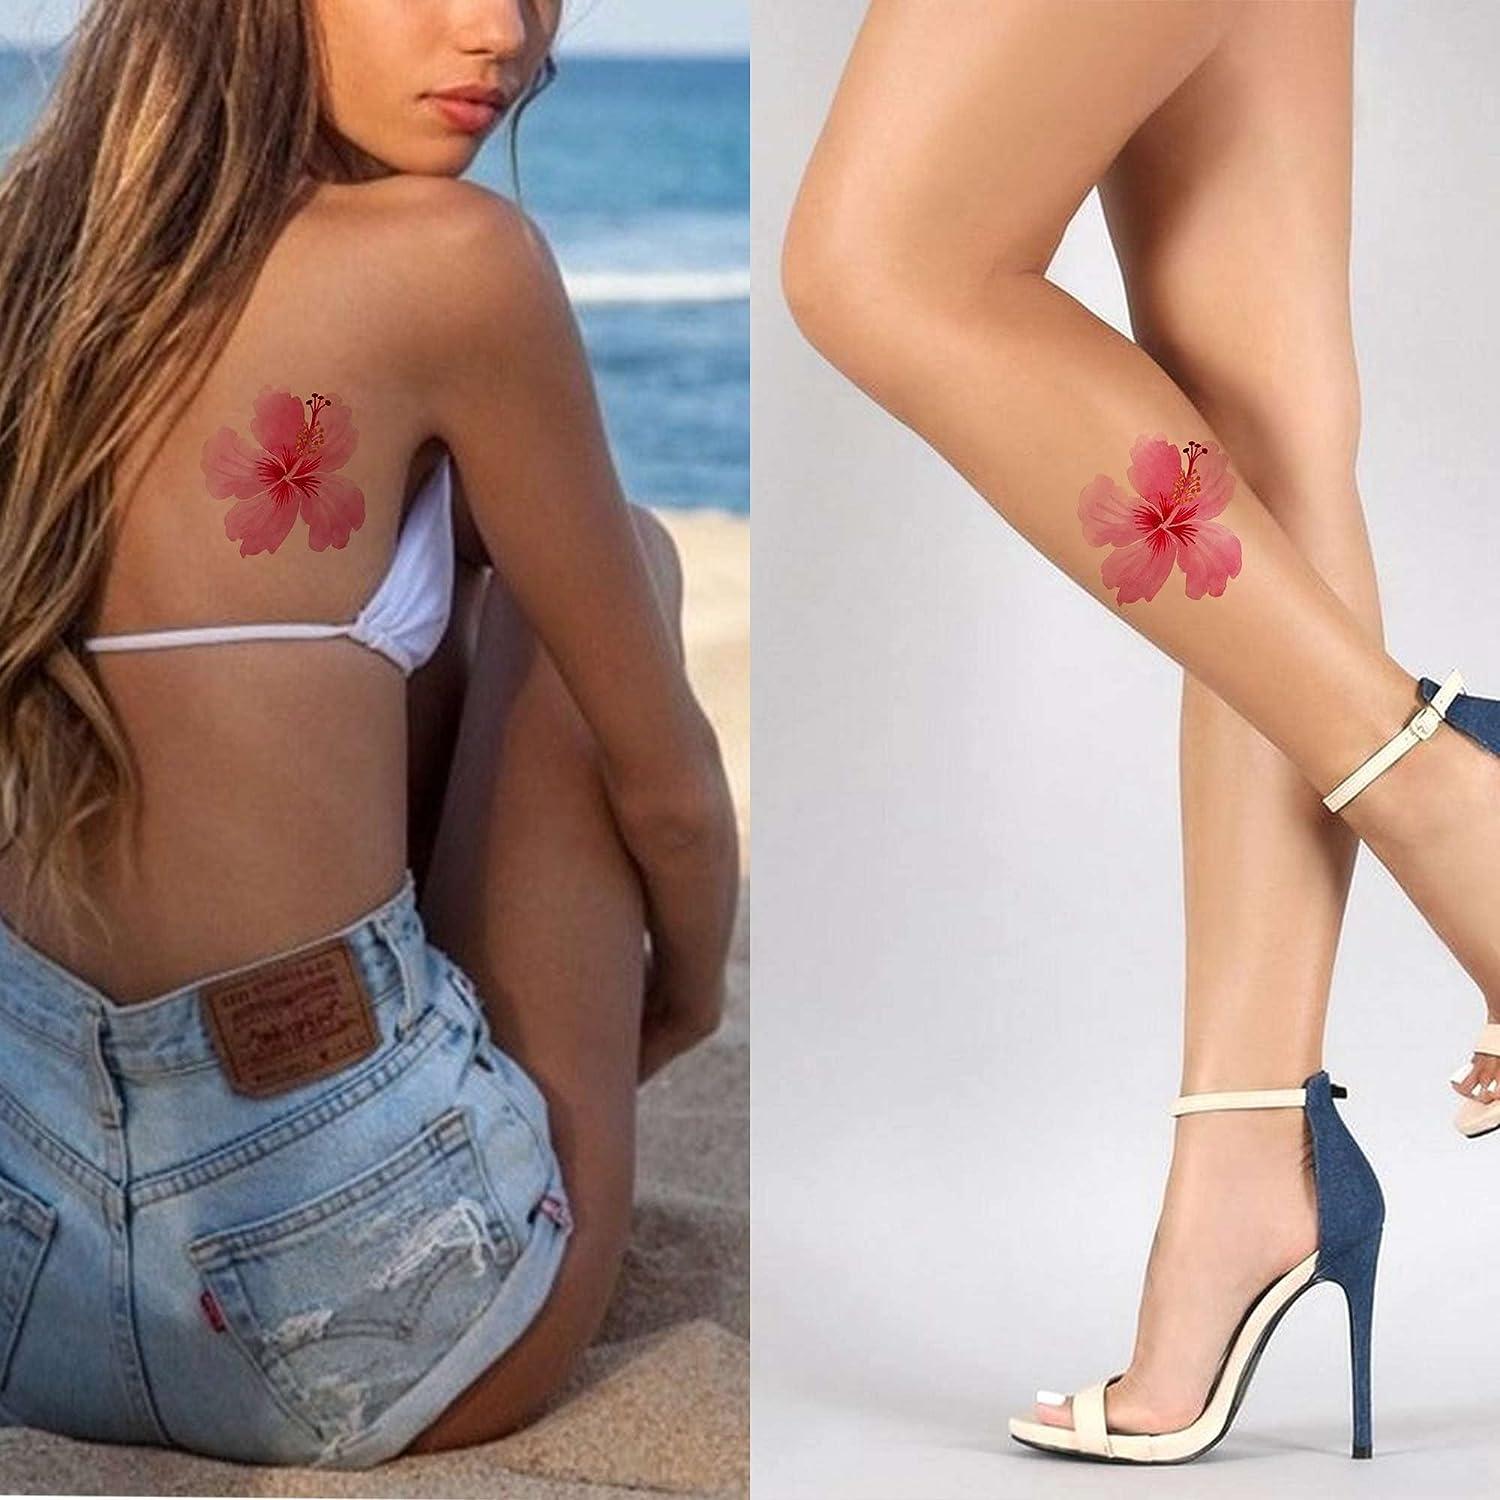 Crazy Celebrity Tattoos — Funny Bad Celeb Tattoo Photos